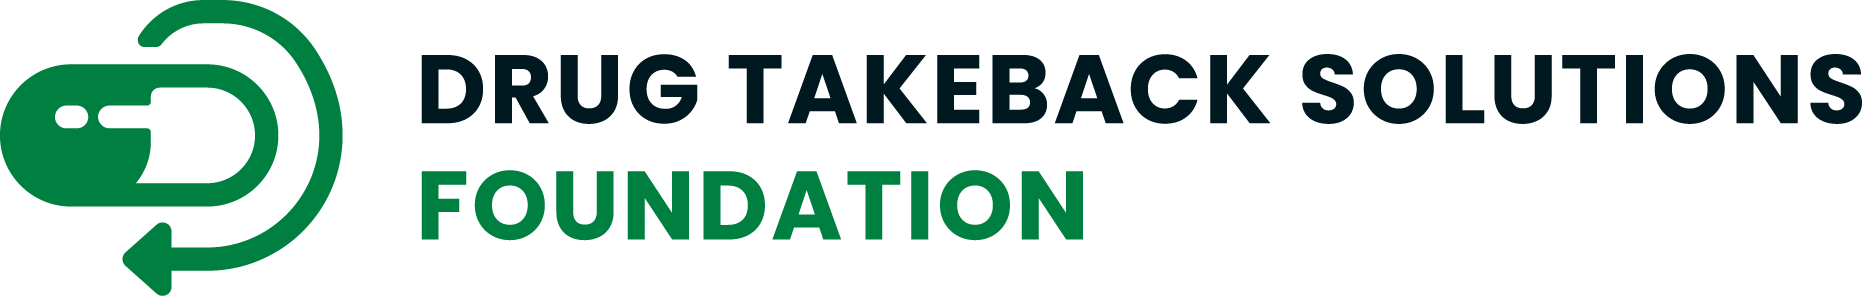 Drug Takeback Solutions Foundations